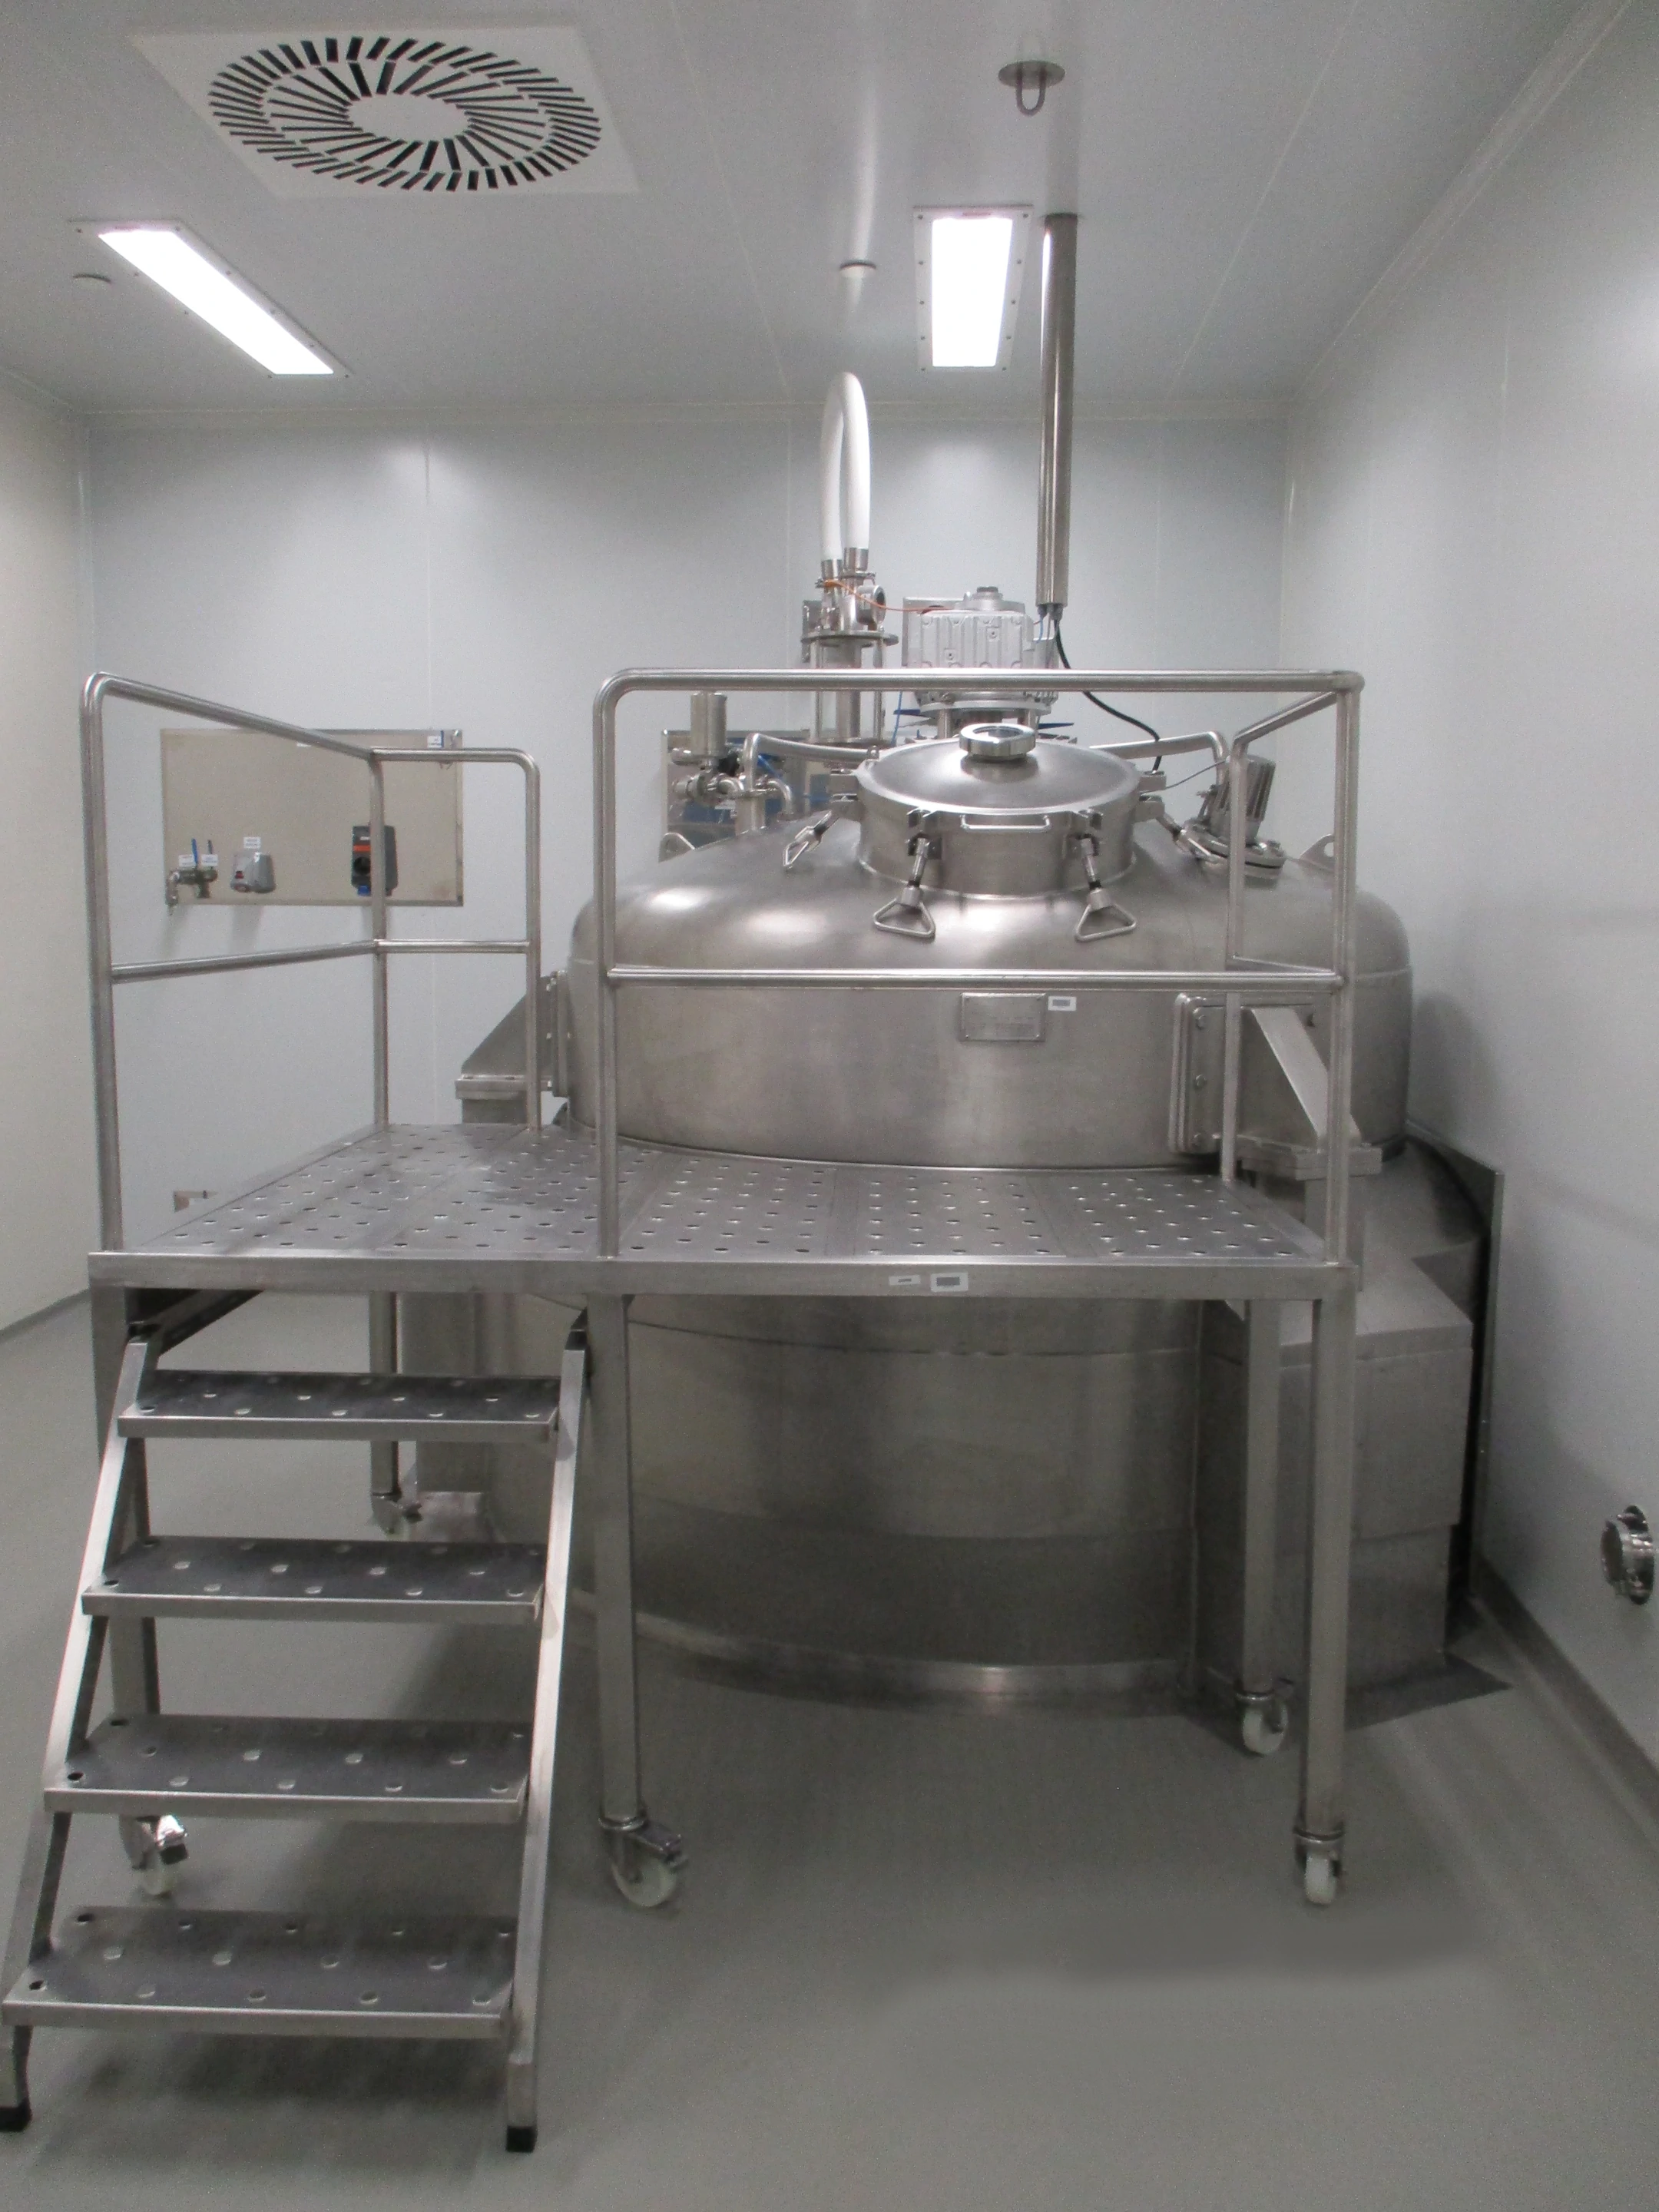 BTL Reactor in stainless steel – Pharmaceutical Industry - Medicines